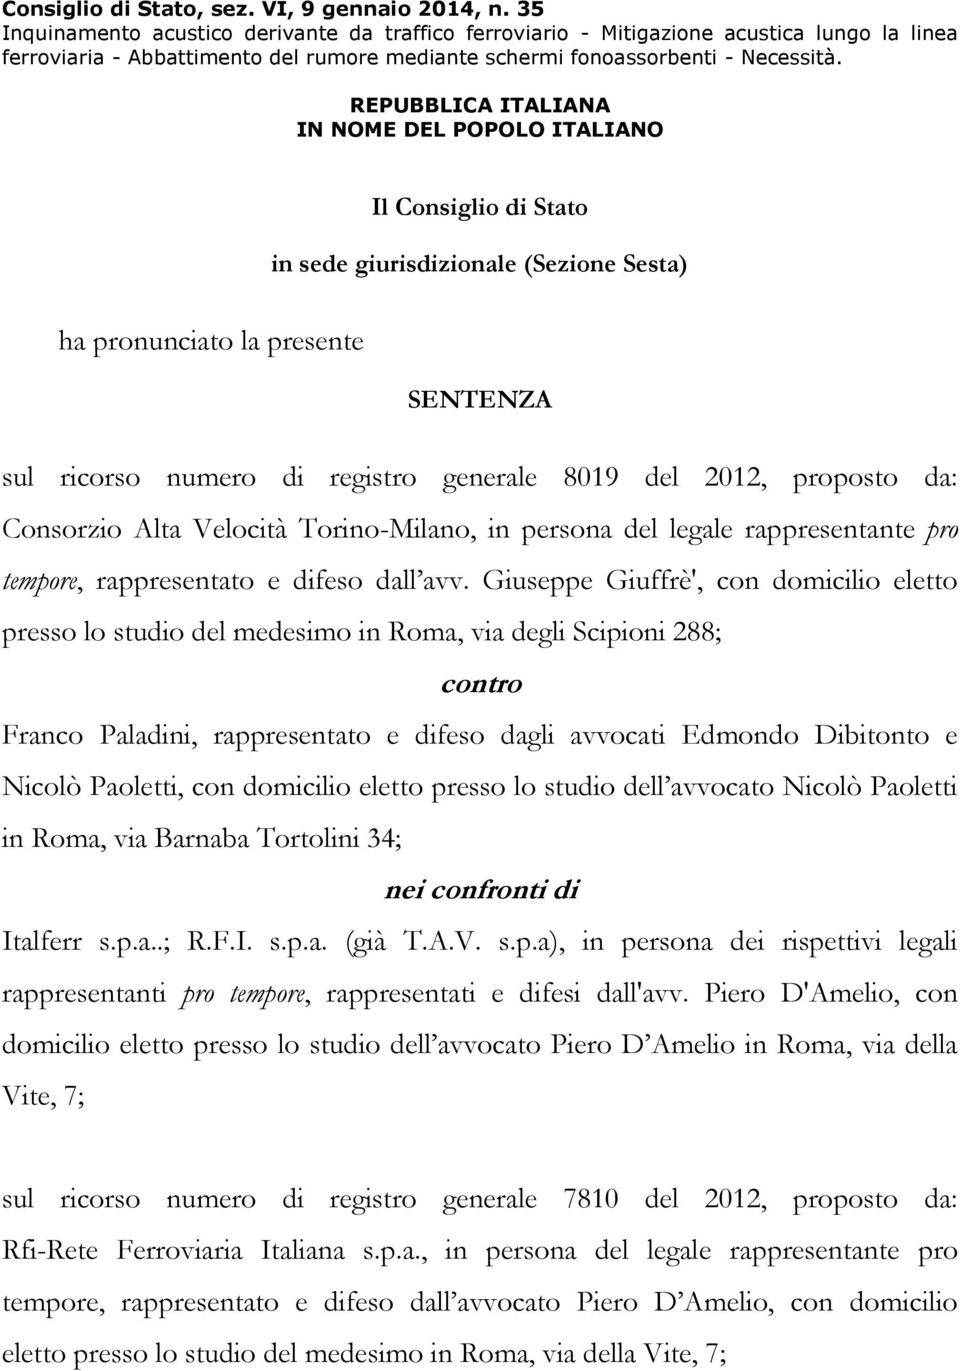 REPUBBLICA ITALIANA IN NOME DEL POPOLO ITALIANO Il Consiglio di Stato in sede giurisdizionale (Sezione Sesta) ha pronunciato la presente SENTENZA sul ricorso numero di registro generale 8019 del